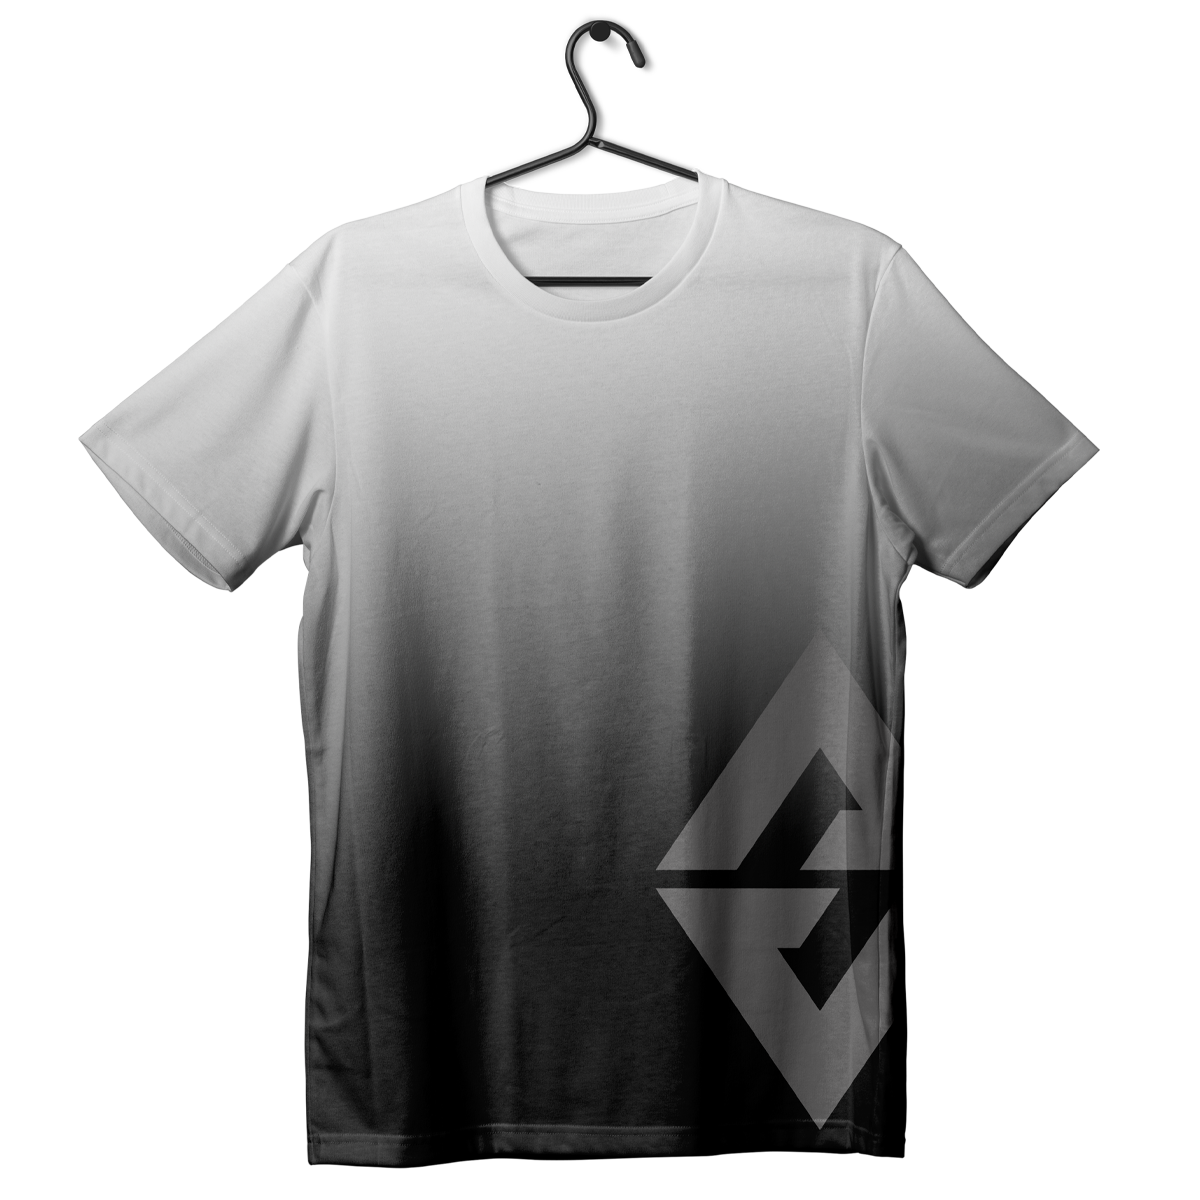 Low Emblem Ombre White Shirt